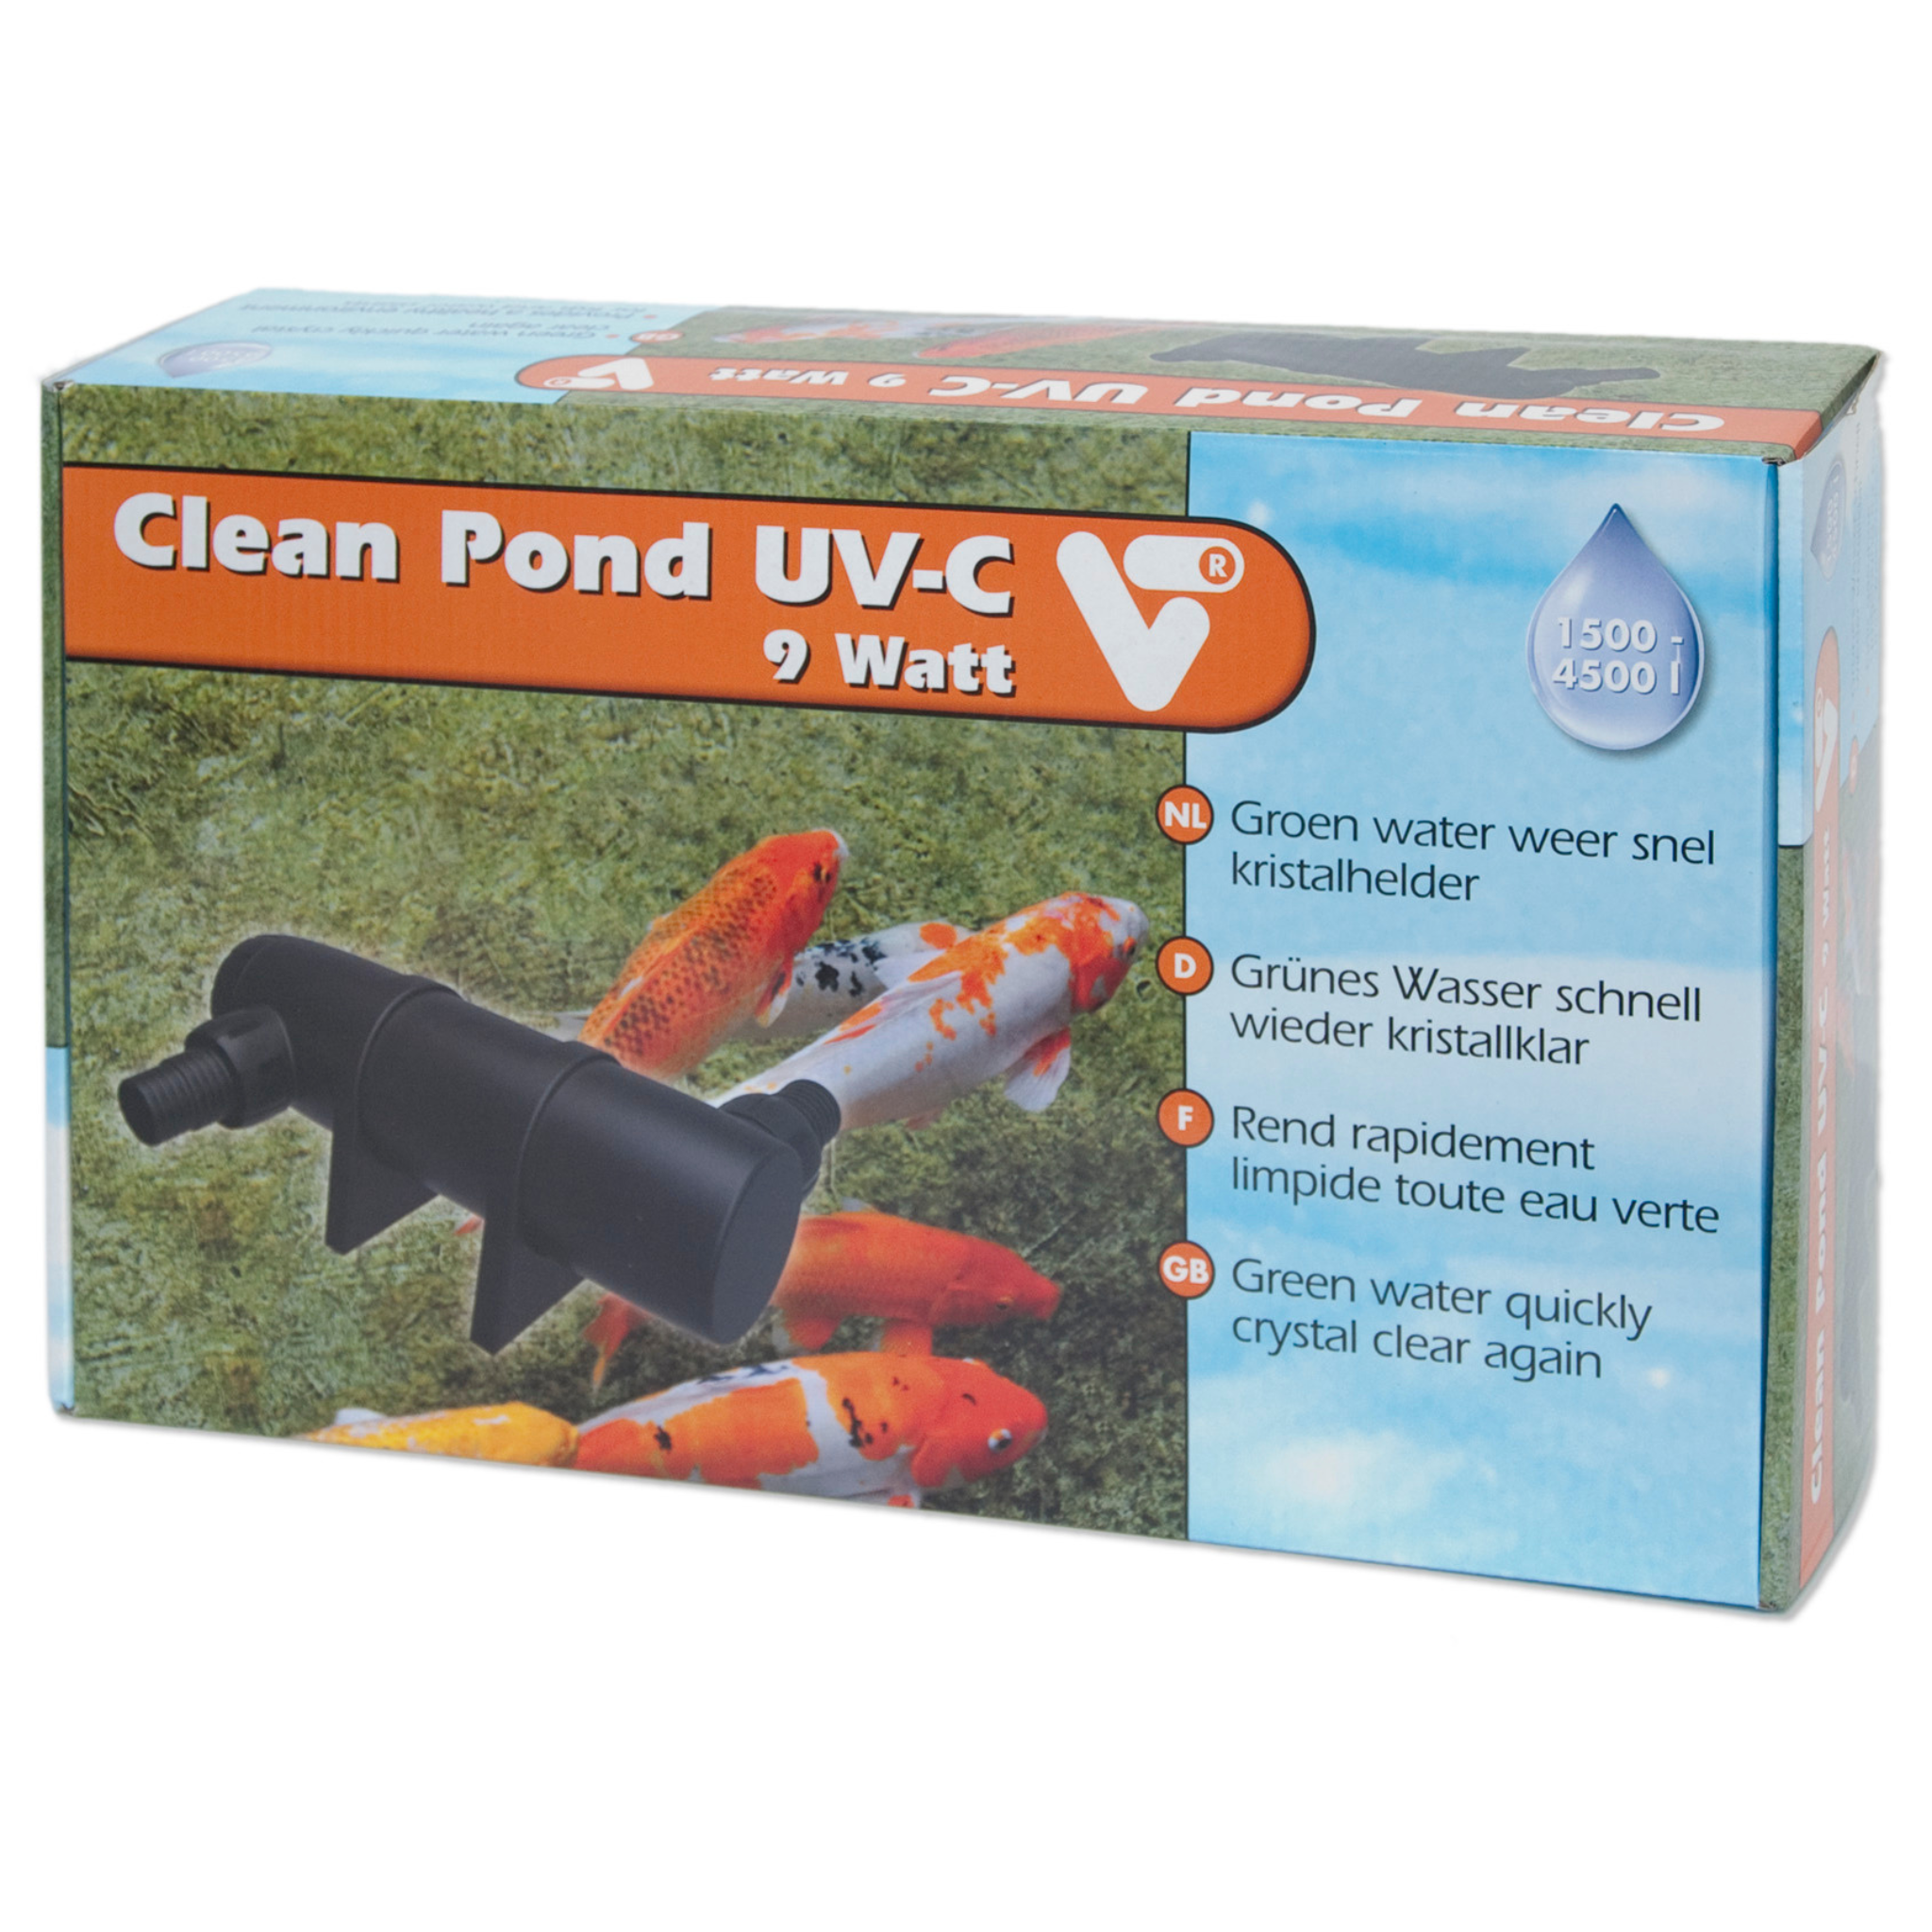 Clean Pond UV-C 9 Watt Verpackung